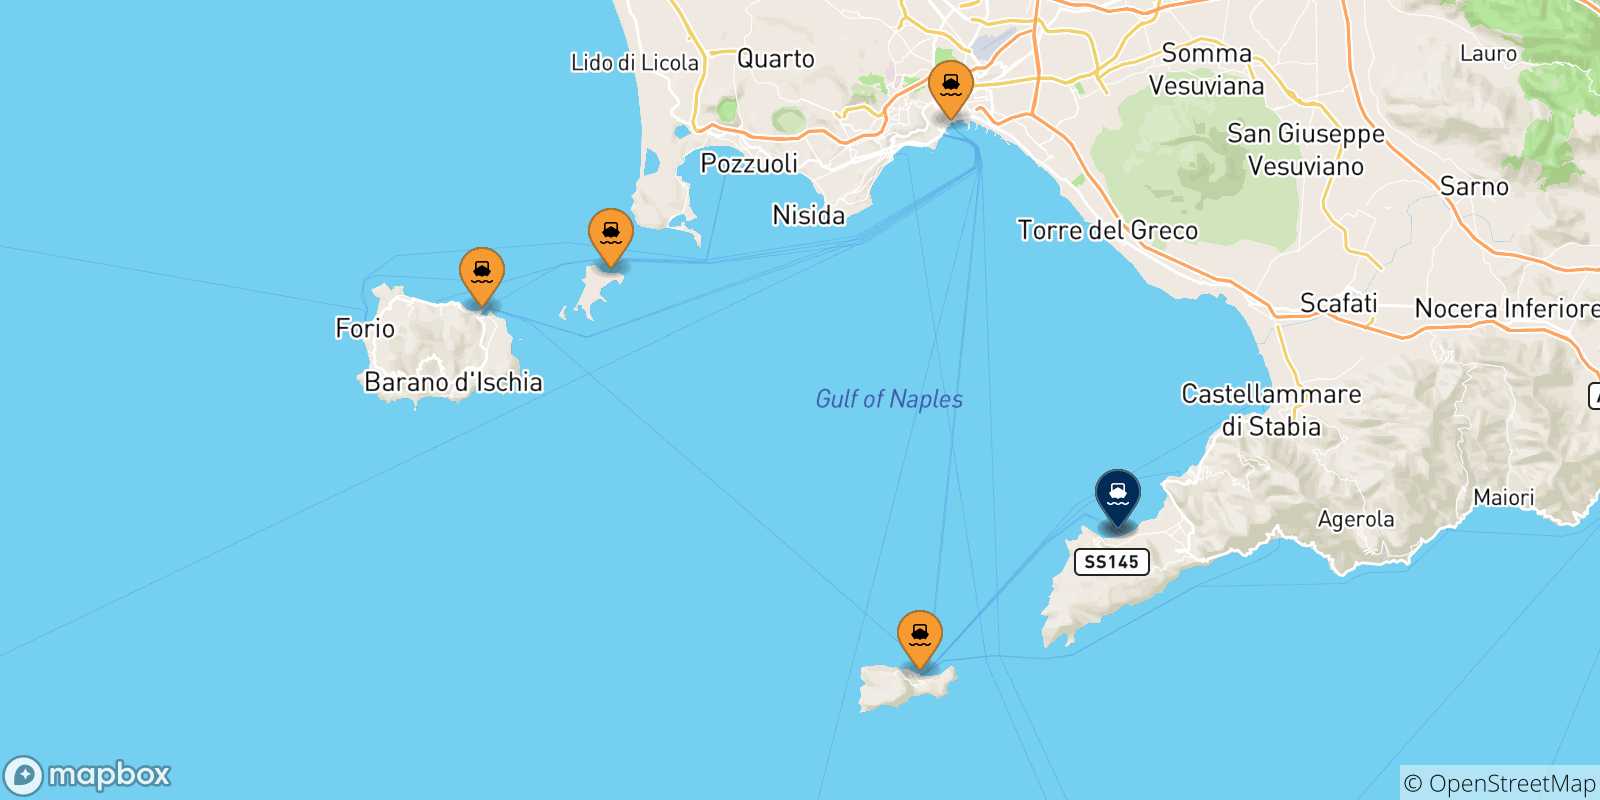 Mapa de las posibles rutas entre Italia y  Sorrento